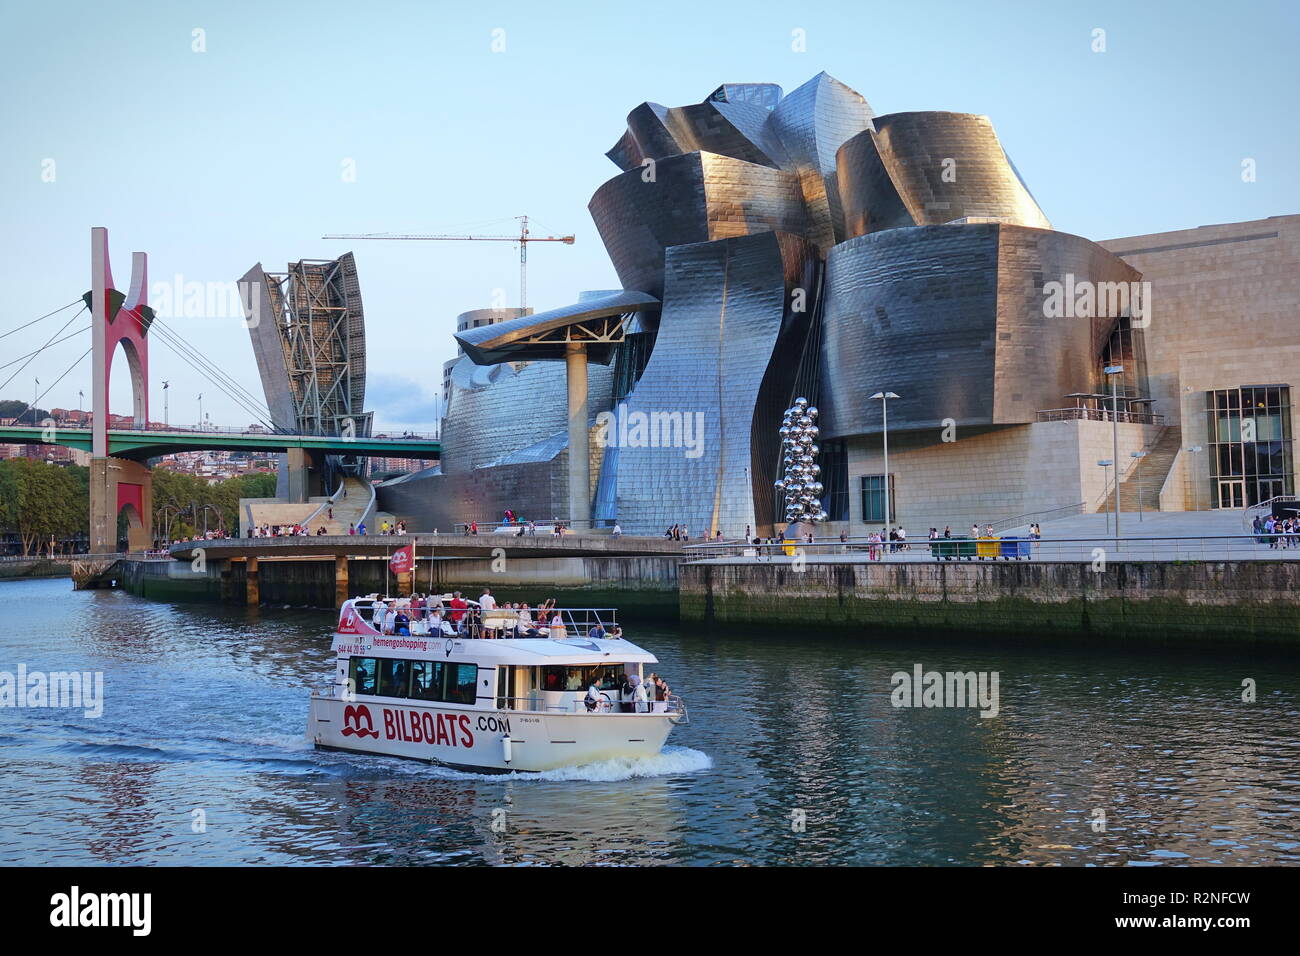 BILBAO, ESPAGNE - Août 2018- Vue extérieure du Musée Guggenheim Bilbao, un musée d'art moderne et contemporain conçu par le célèbre architecte Frank Geh Banque D'Images